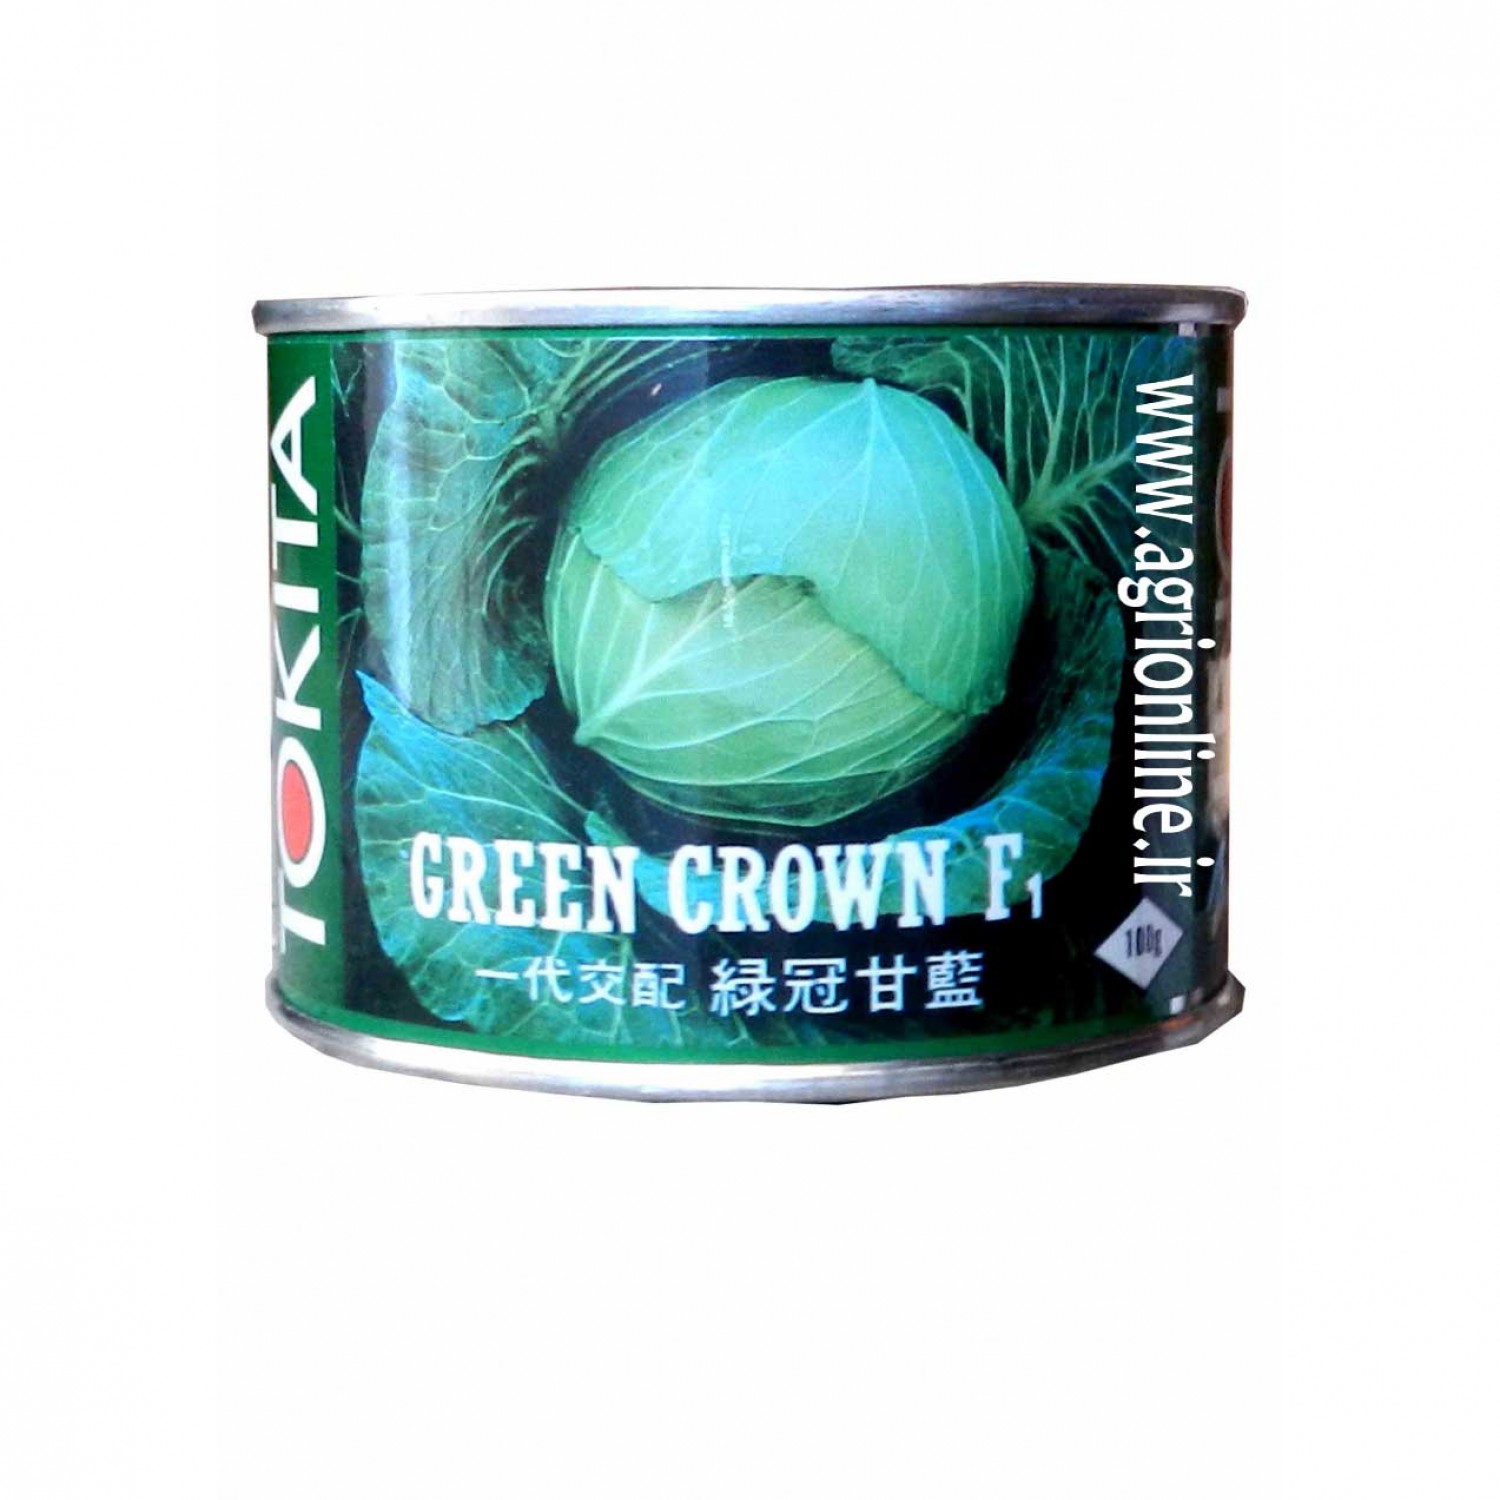 بذر کلم گرین کرون توکیتا- Green Crown tokita